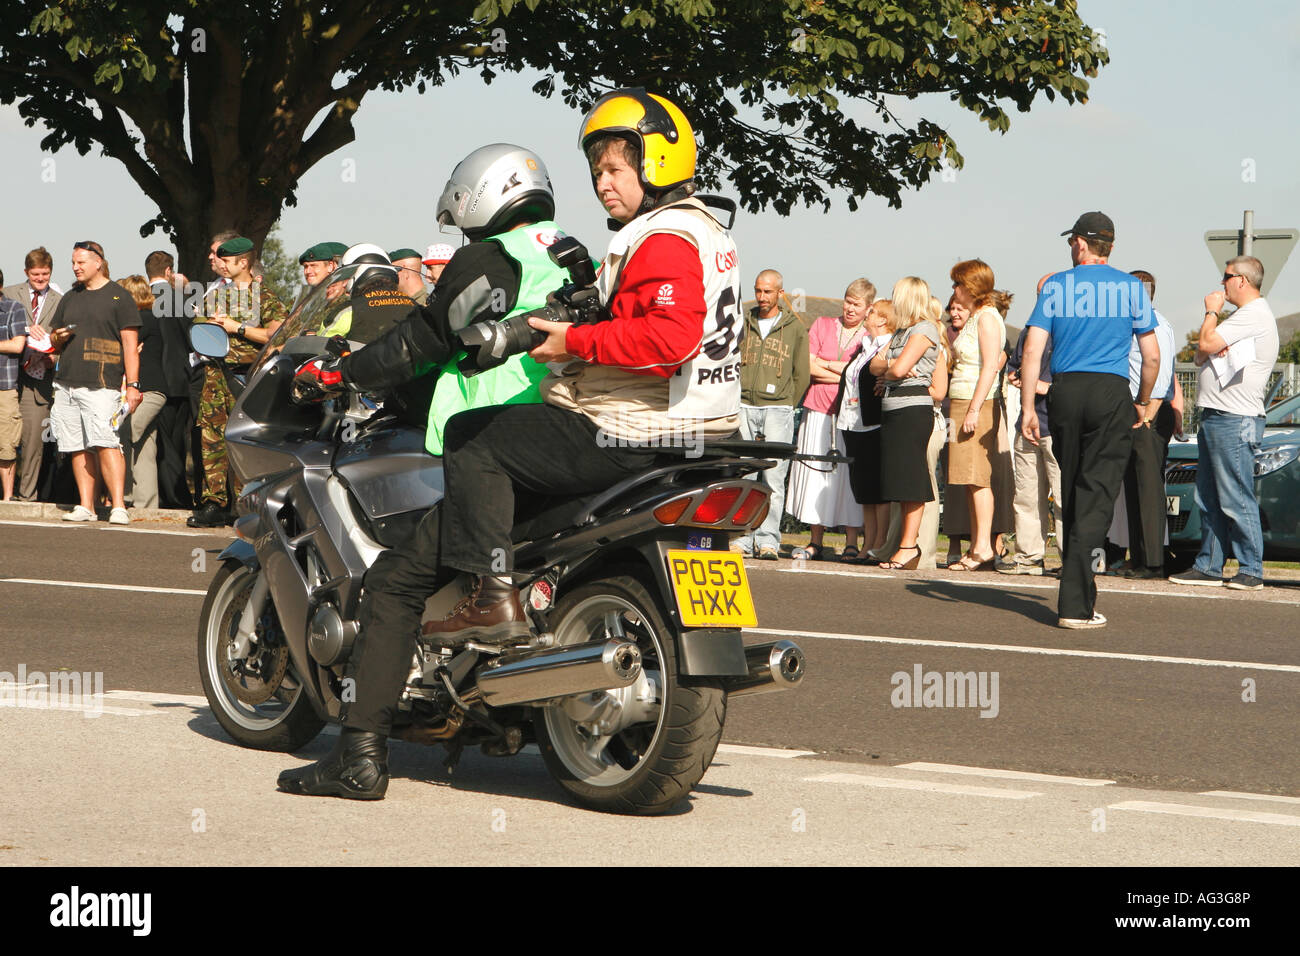 Photographe de sports avec caméra et objectif long assis sur le dos de moto, couvrant le Tour de Bretagne cycliste Banque D'Images